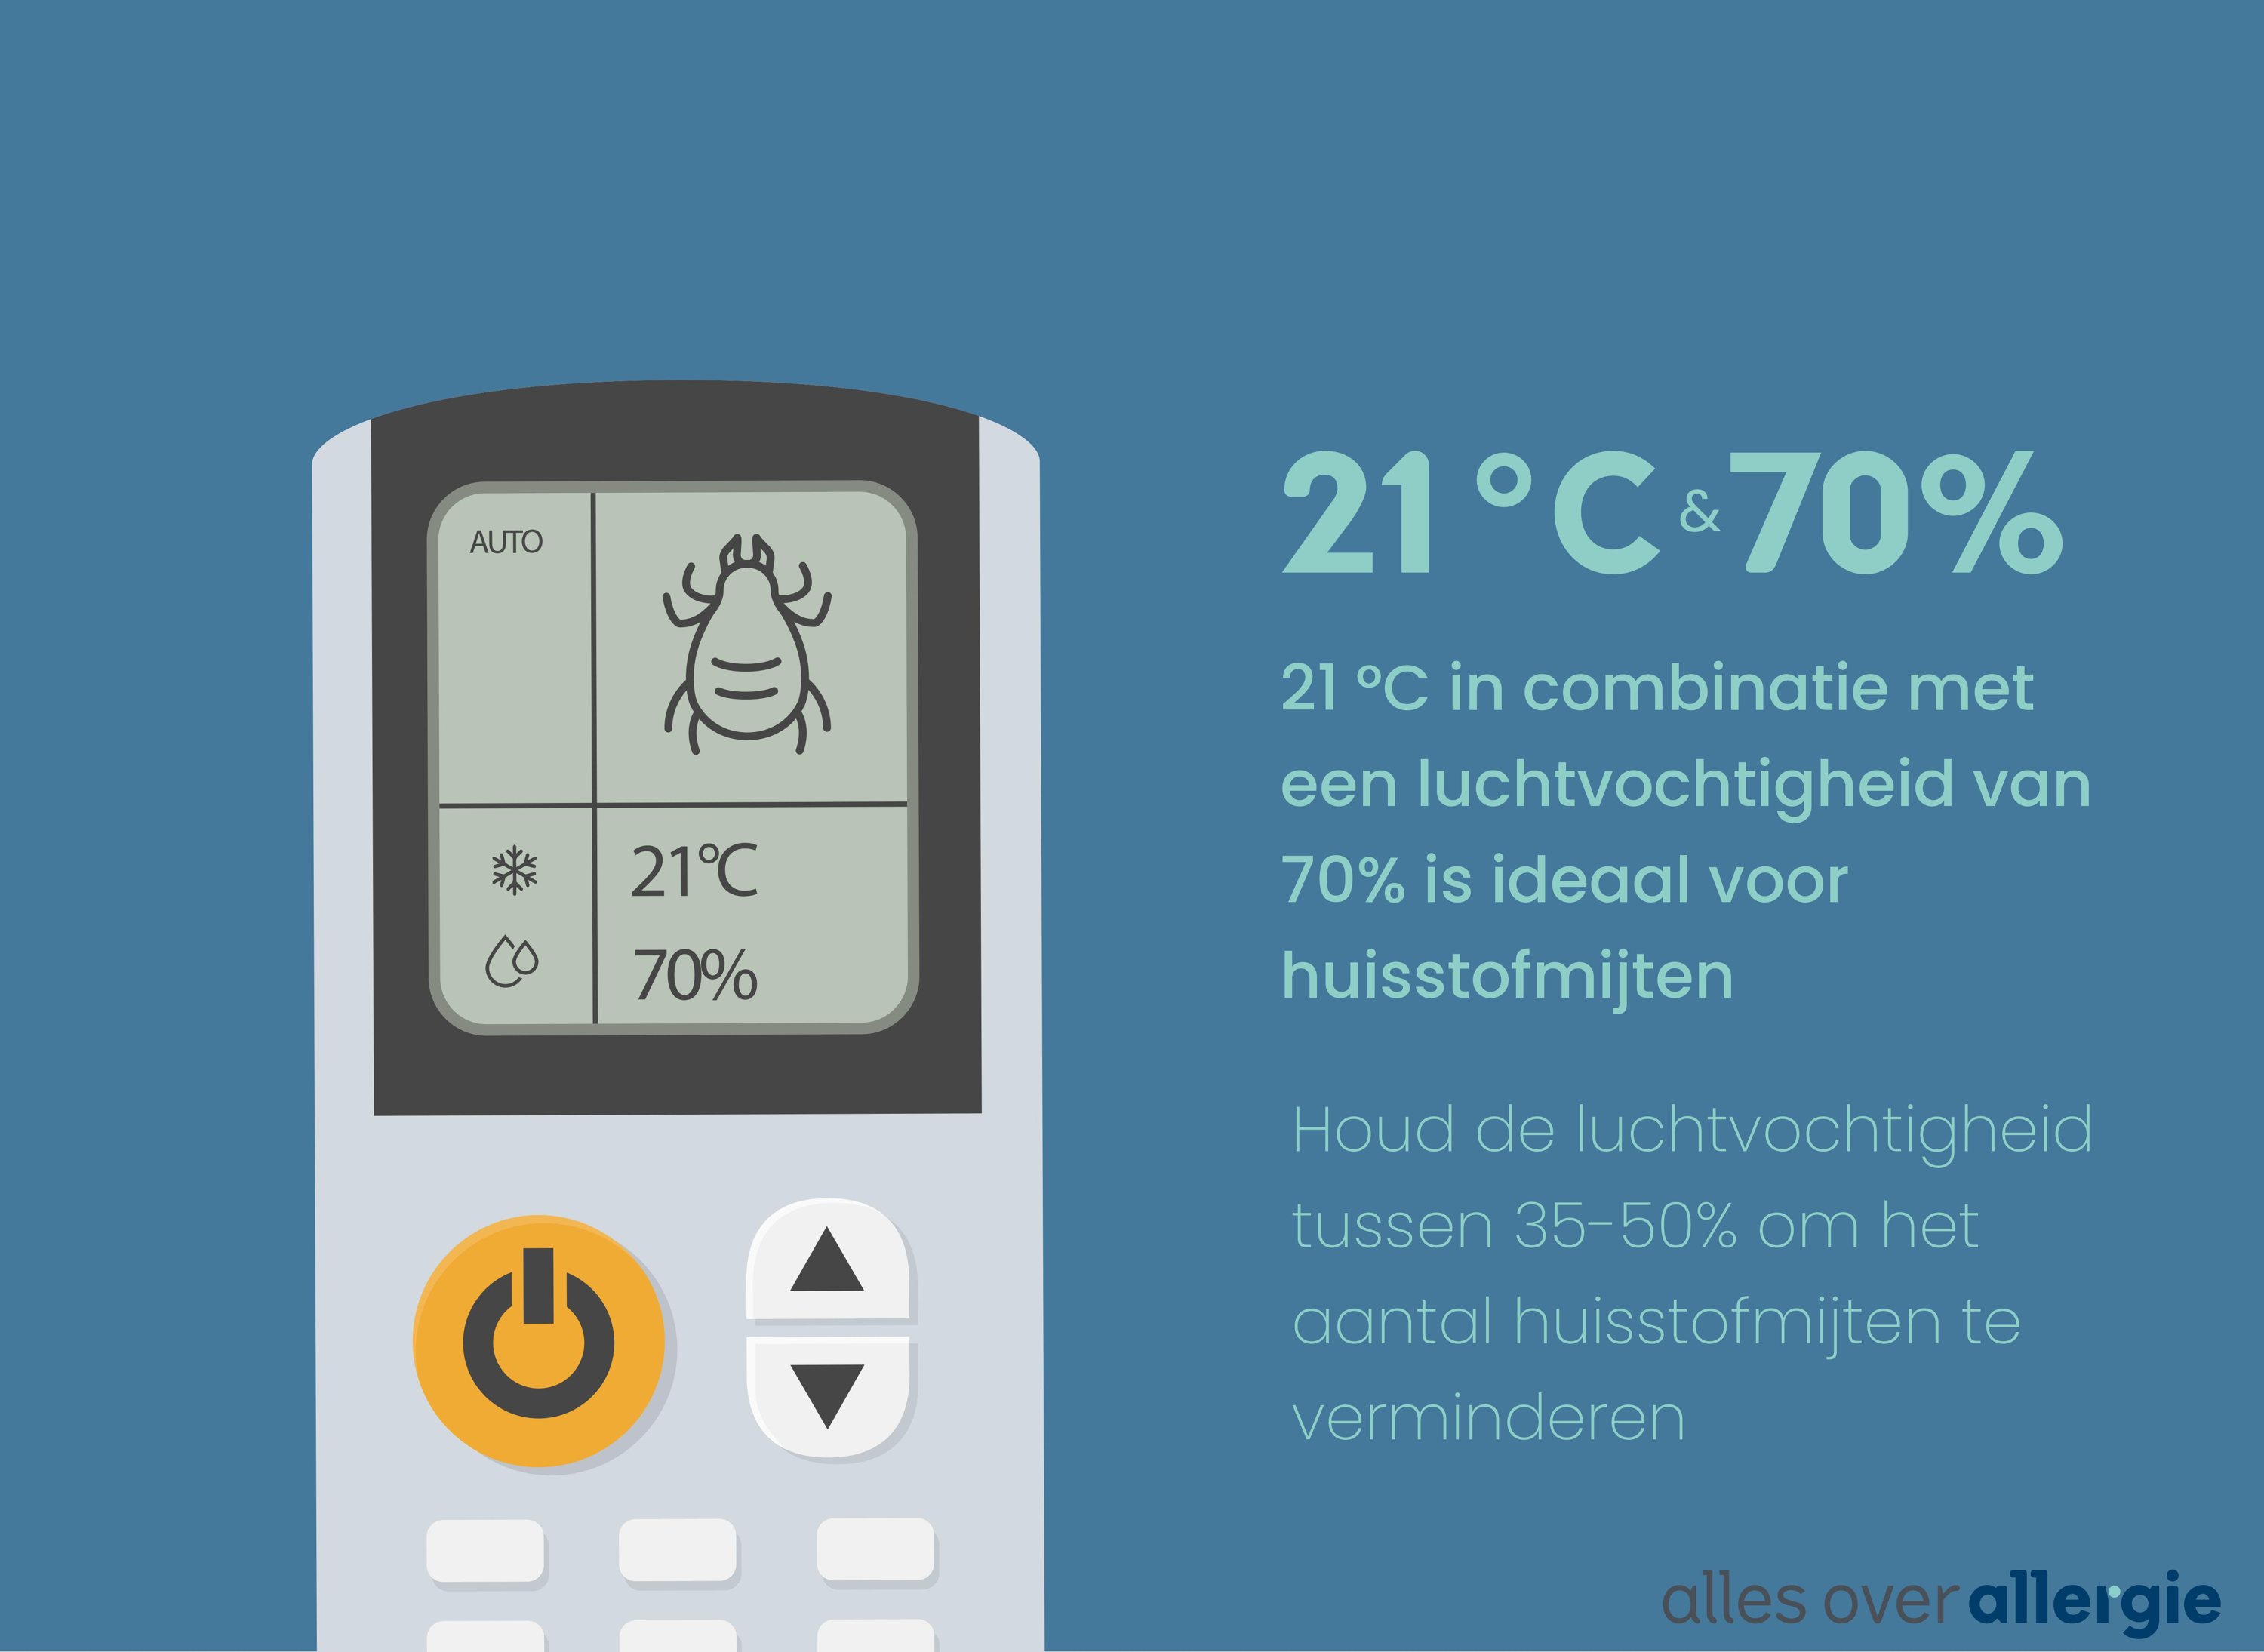 Een temperatuur van 21°C en relatieve luchtvochtigheid van 70% zijn de ideale leefomstandigheden voor huisstofmijten. Houd de luchtvochtigheid daarom tussen de 30-50%.